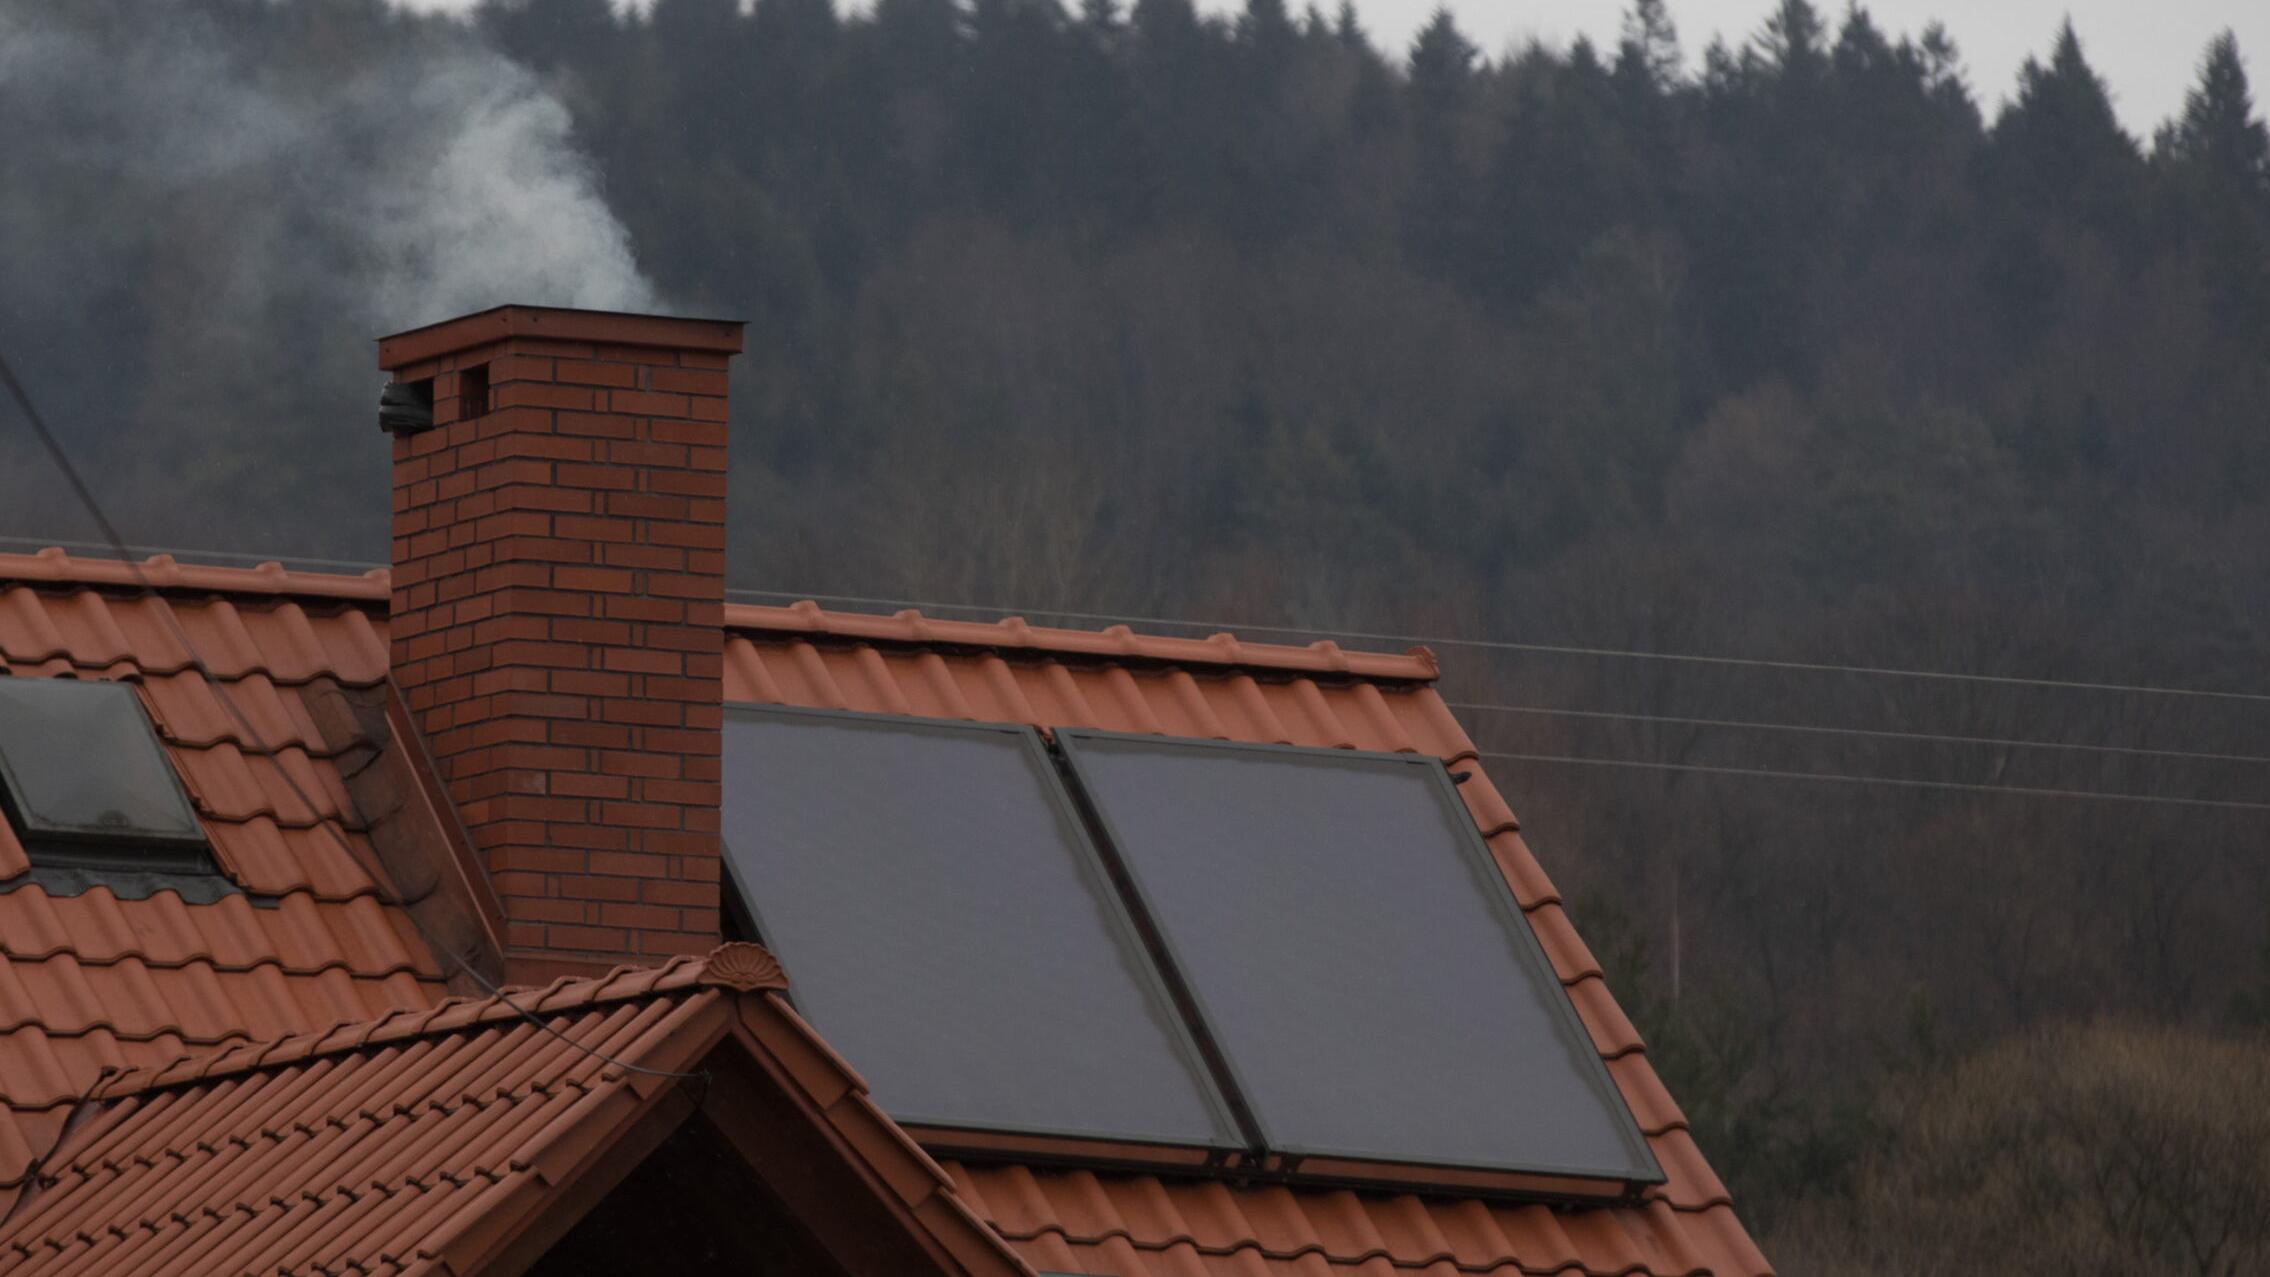 Dym z komina - dach, obok komina dwa panele słoneczne